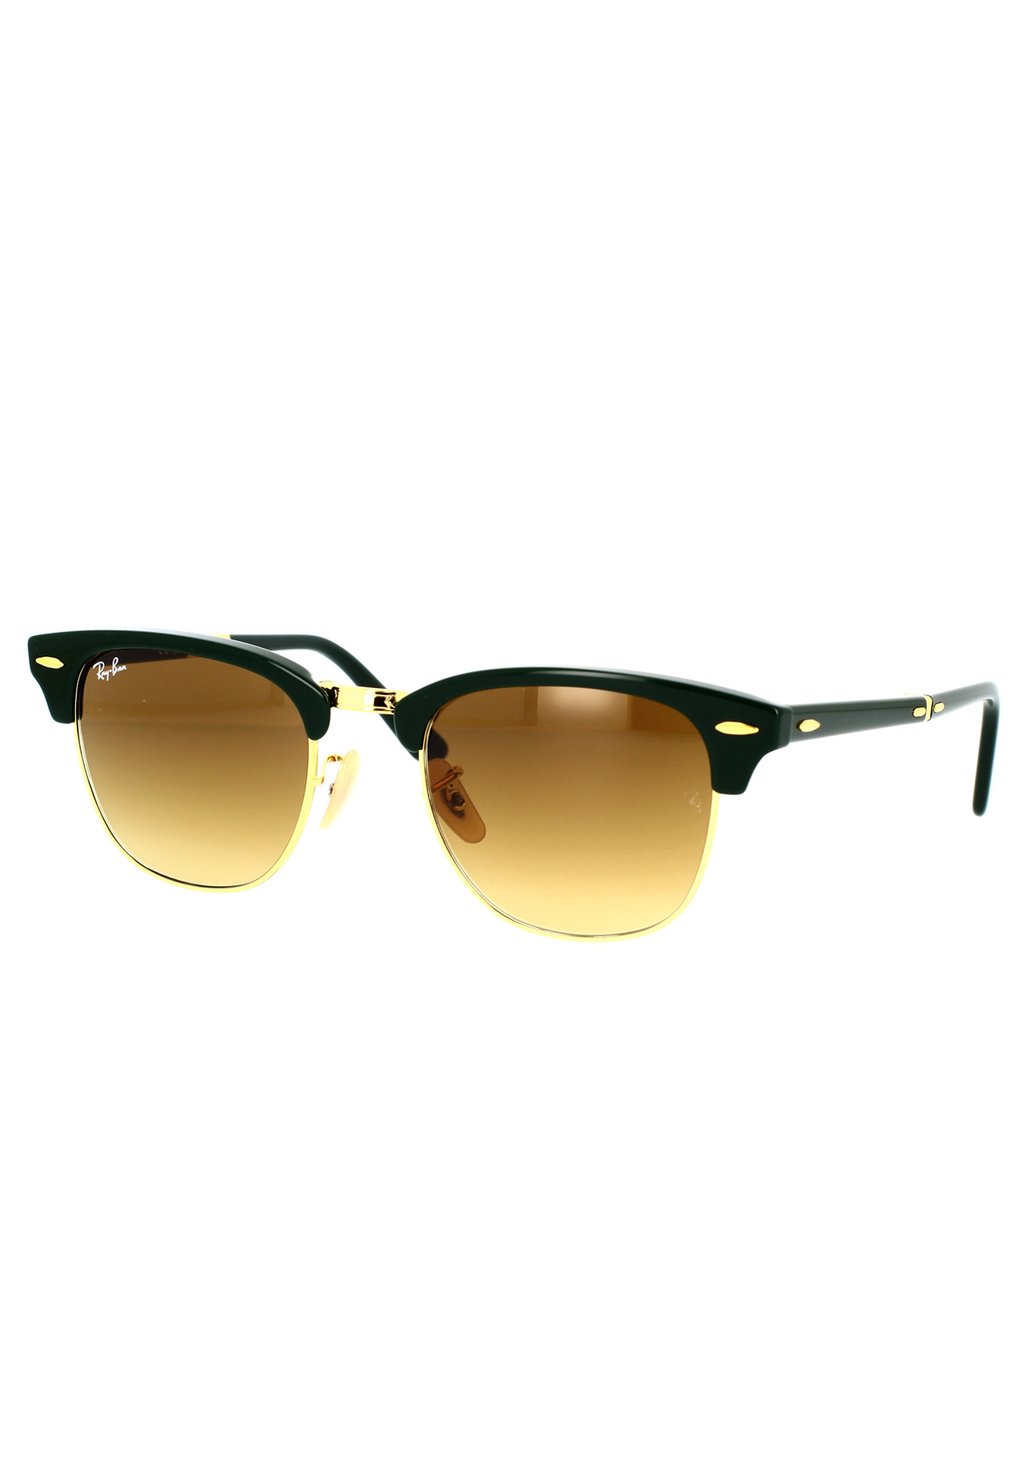 Солнцезащитные очки Clubmaster Folding Ray-Ban, зеленый